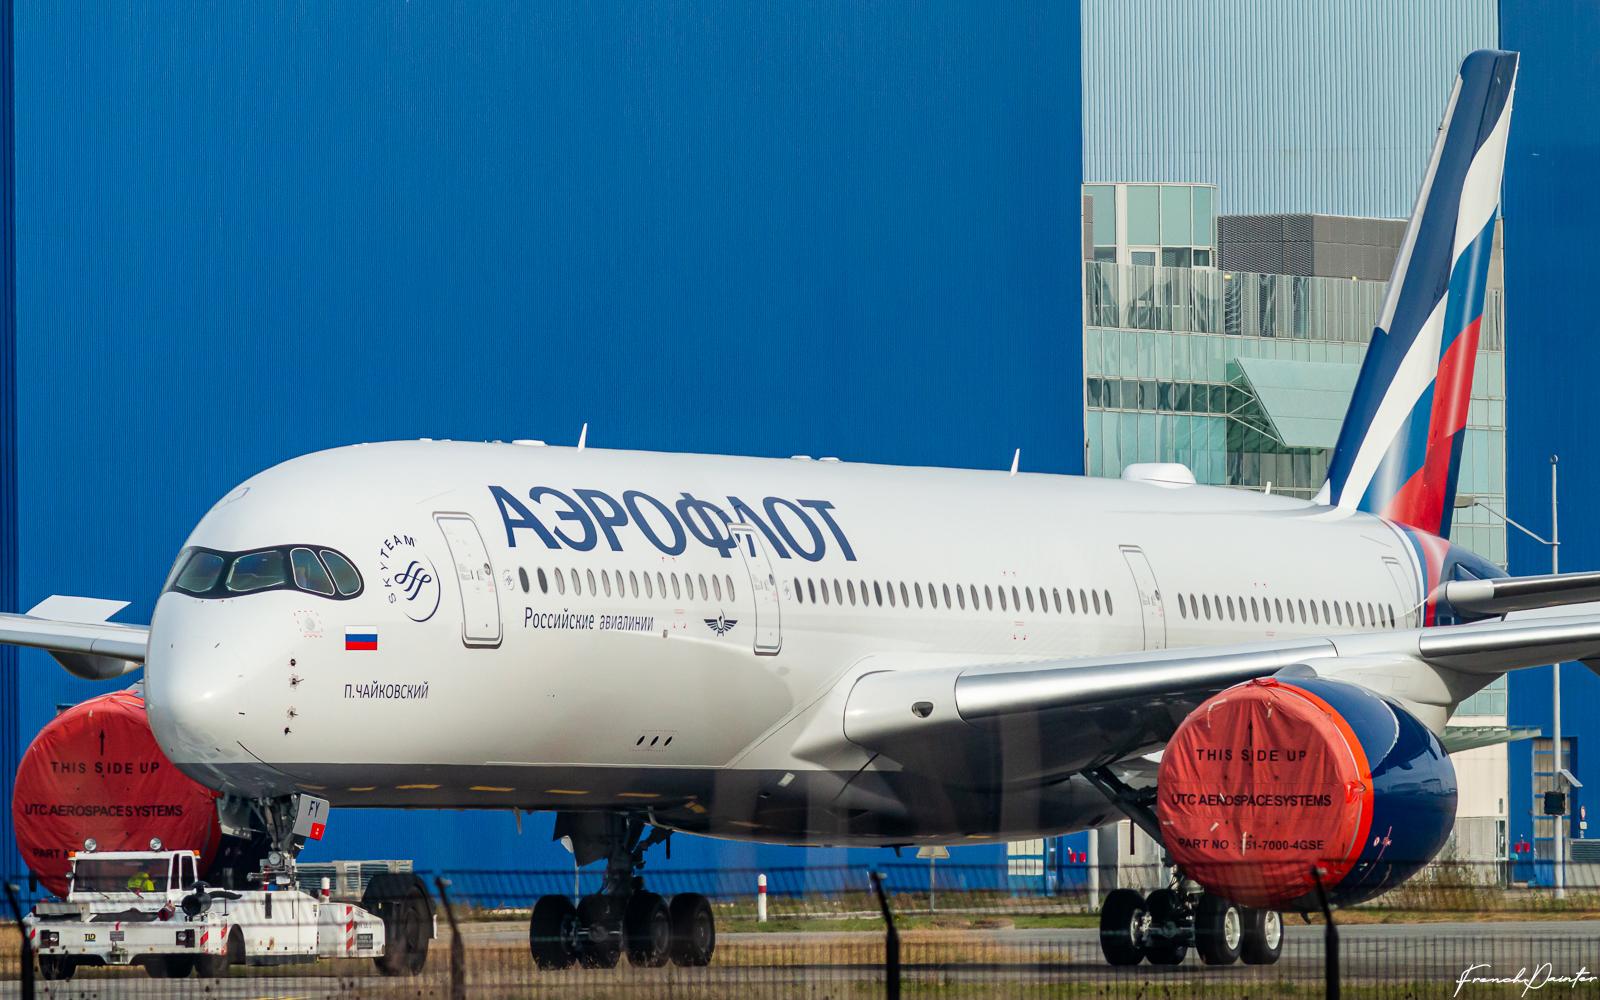 Aeroflot ilk çeyrekte 22,5 milyar ruble zarar açıkladı